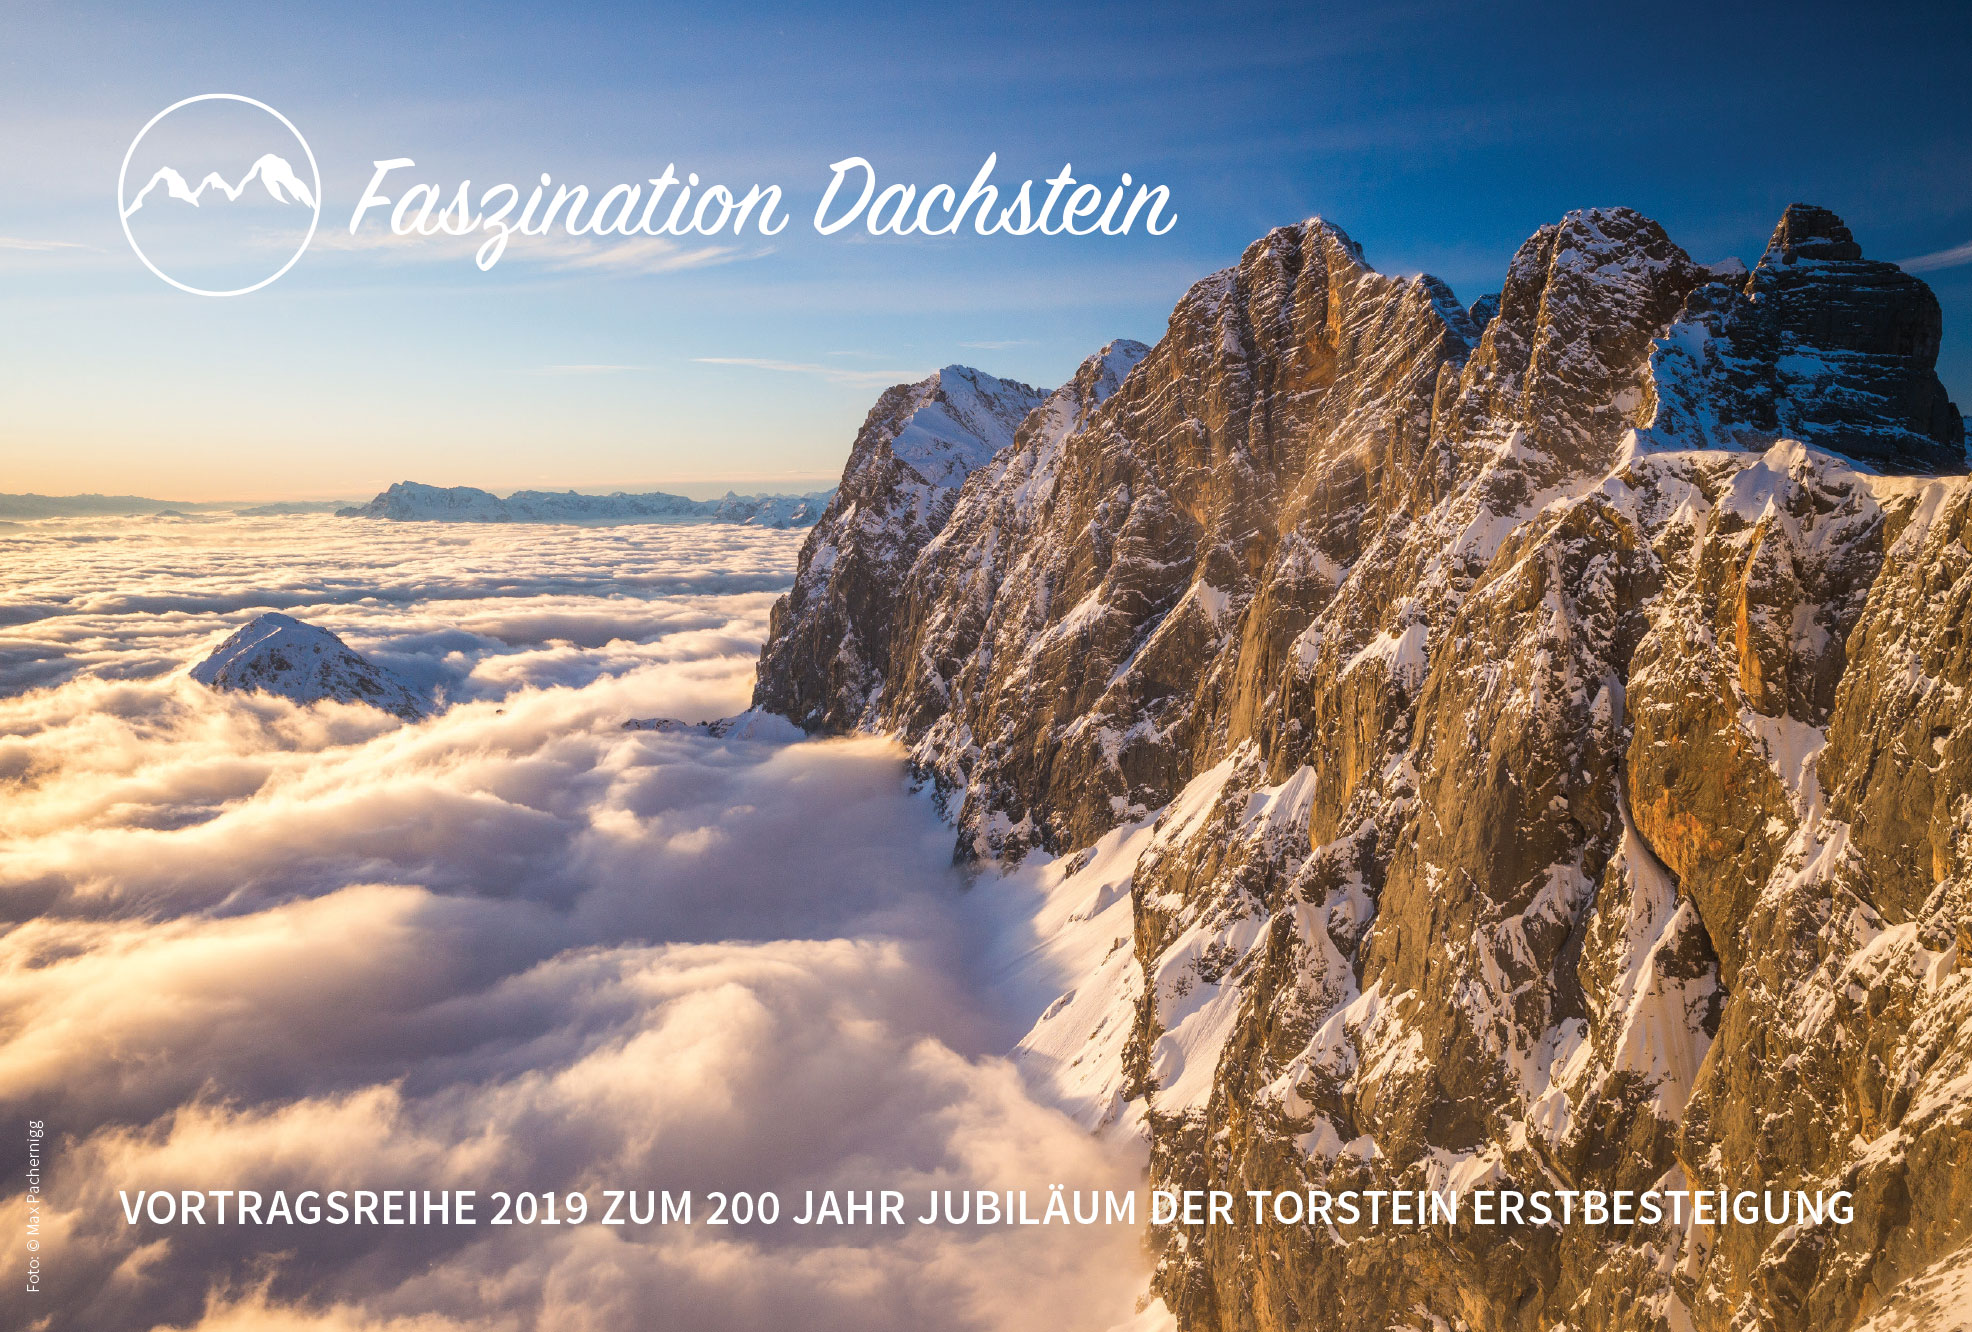 Broschüre Vortragsteihe Faszination Dachstein